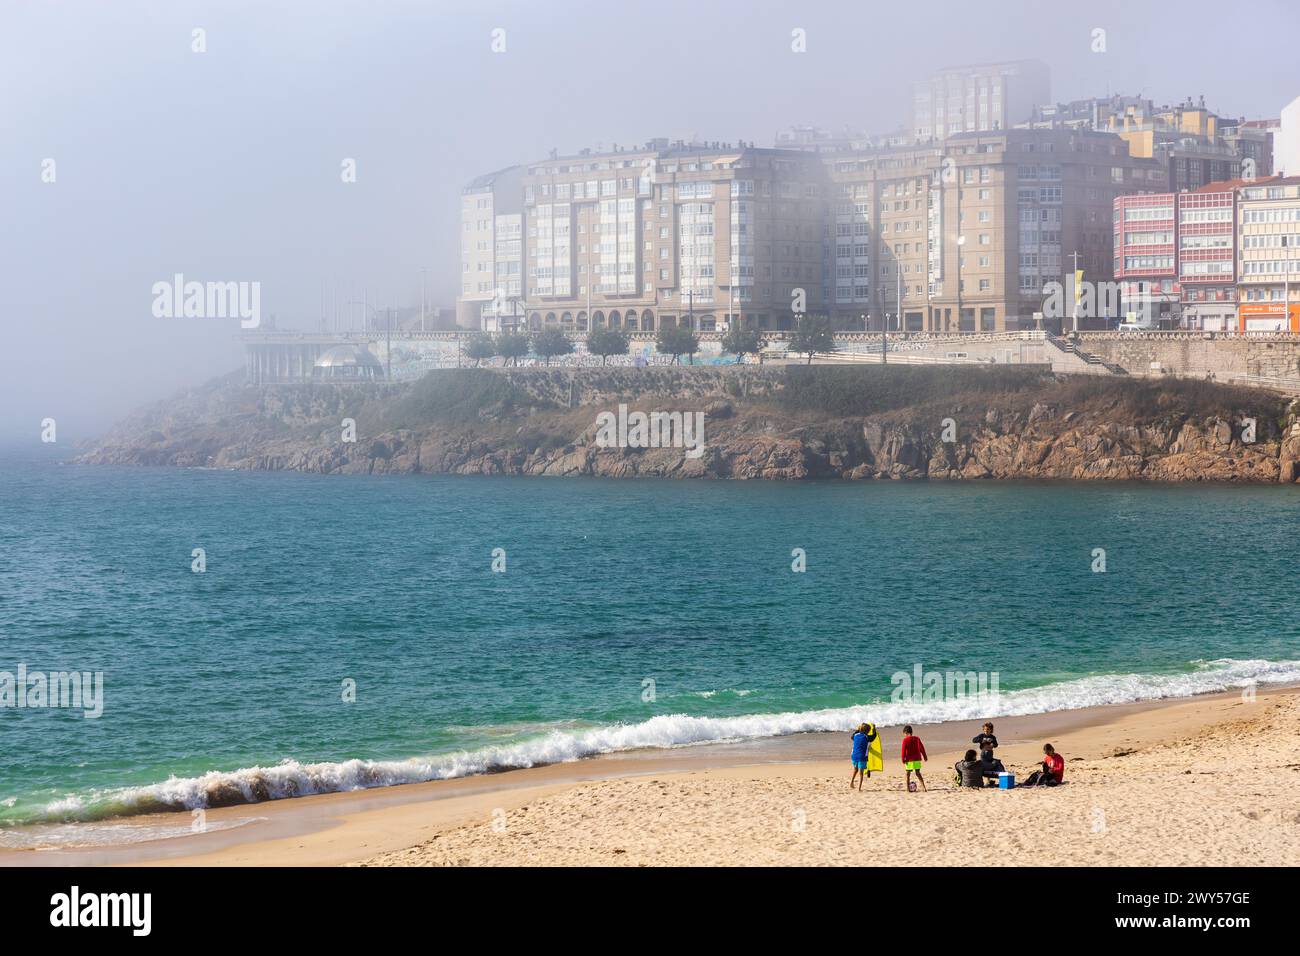 La plage de Orzán, l'océan Atlantique, le front de mer, et les bâtiments de la Coruña dans un épais brouillard. Journée ensoleillée. La Coruña, Galice, Espagne. Banque D'Images